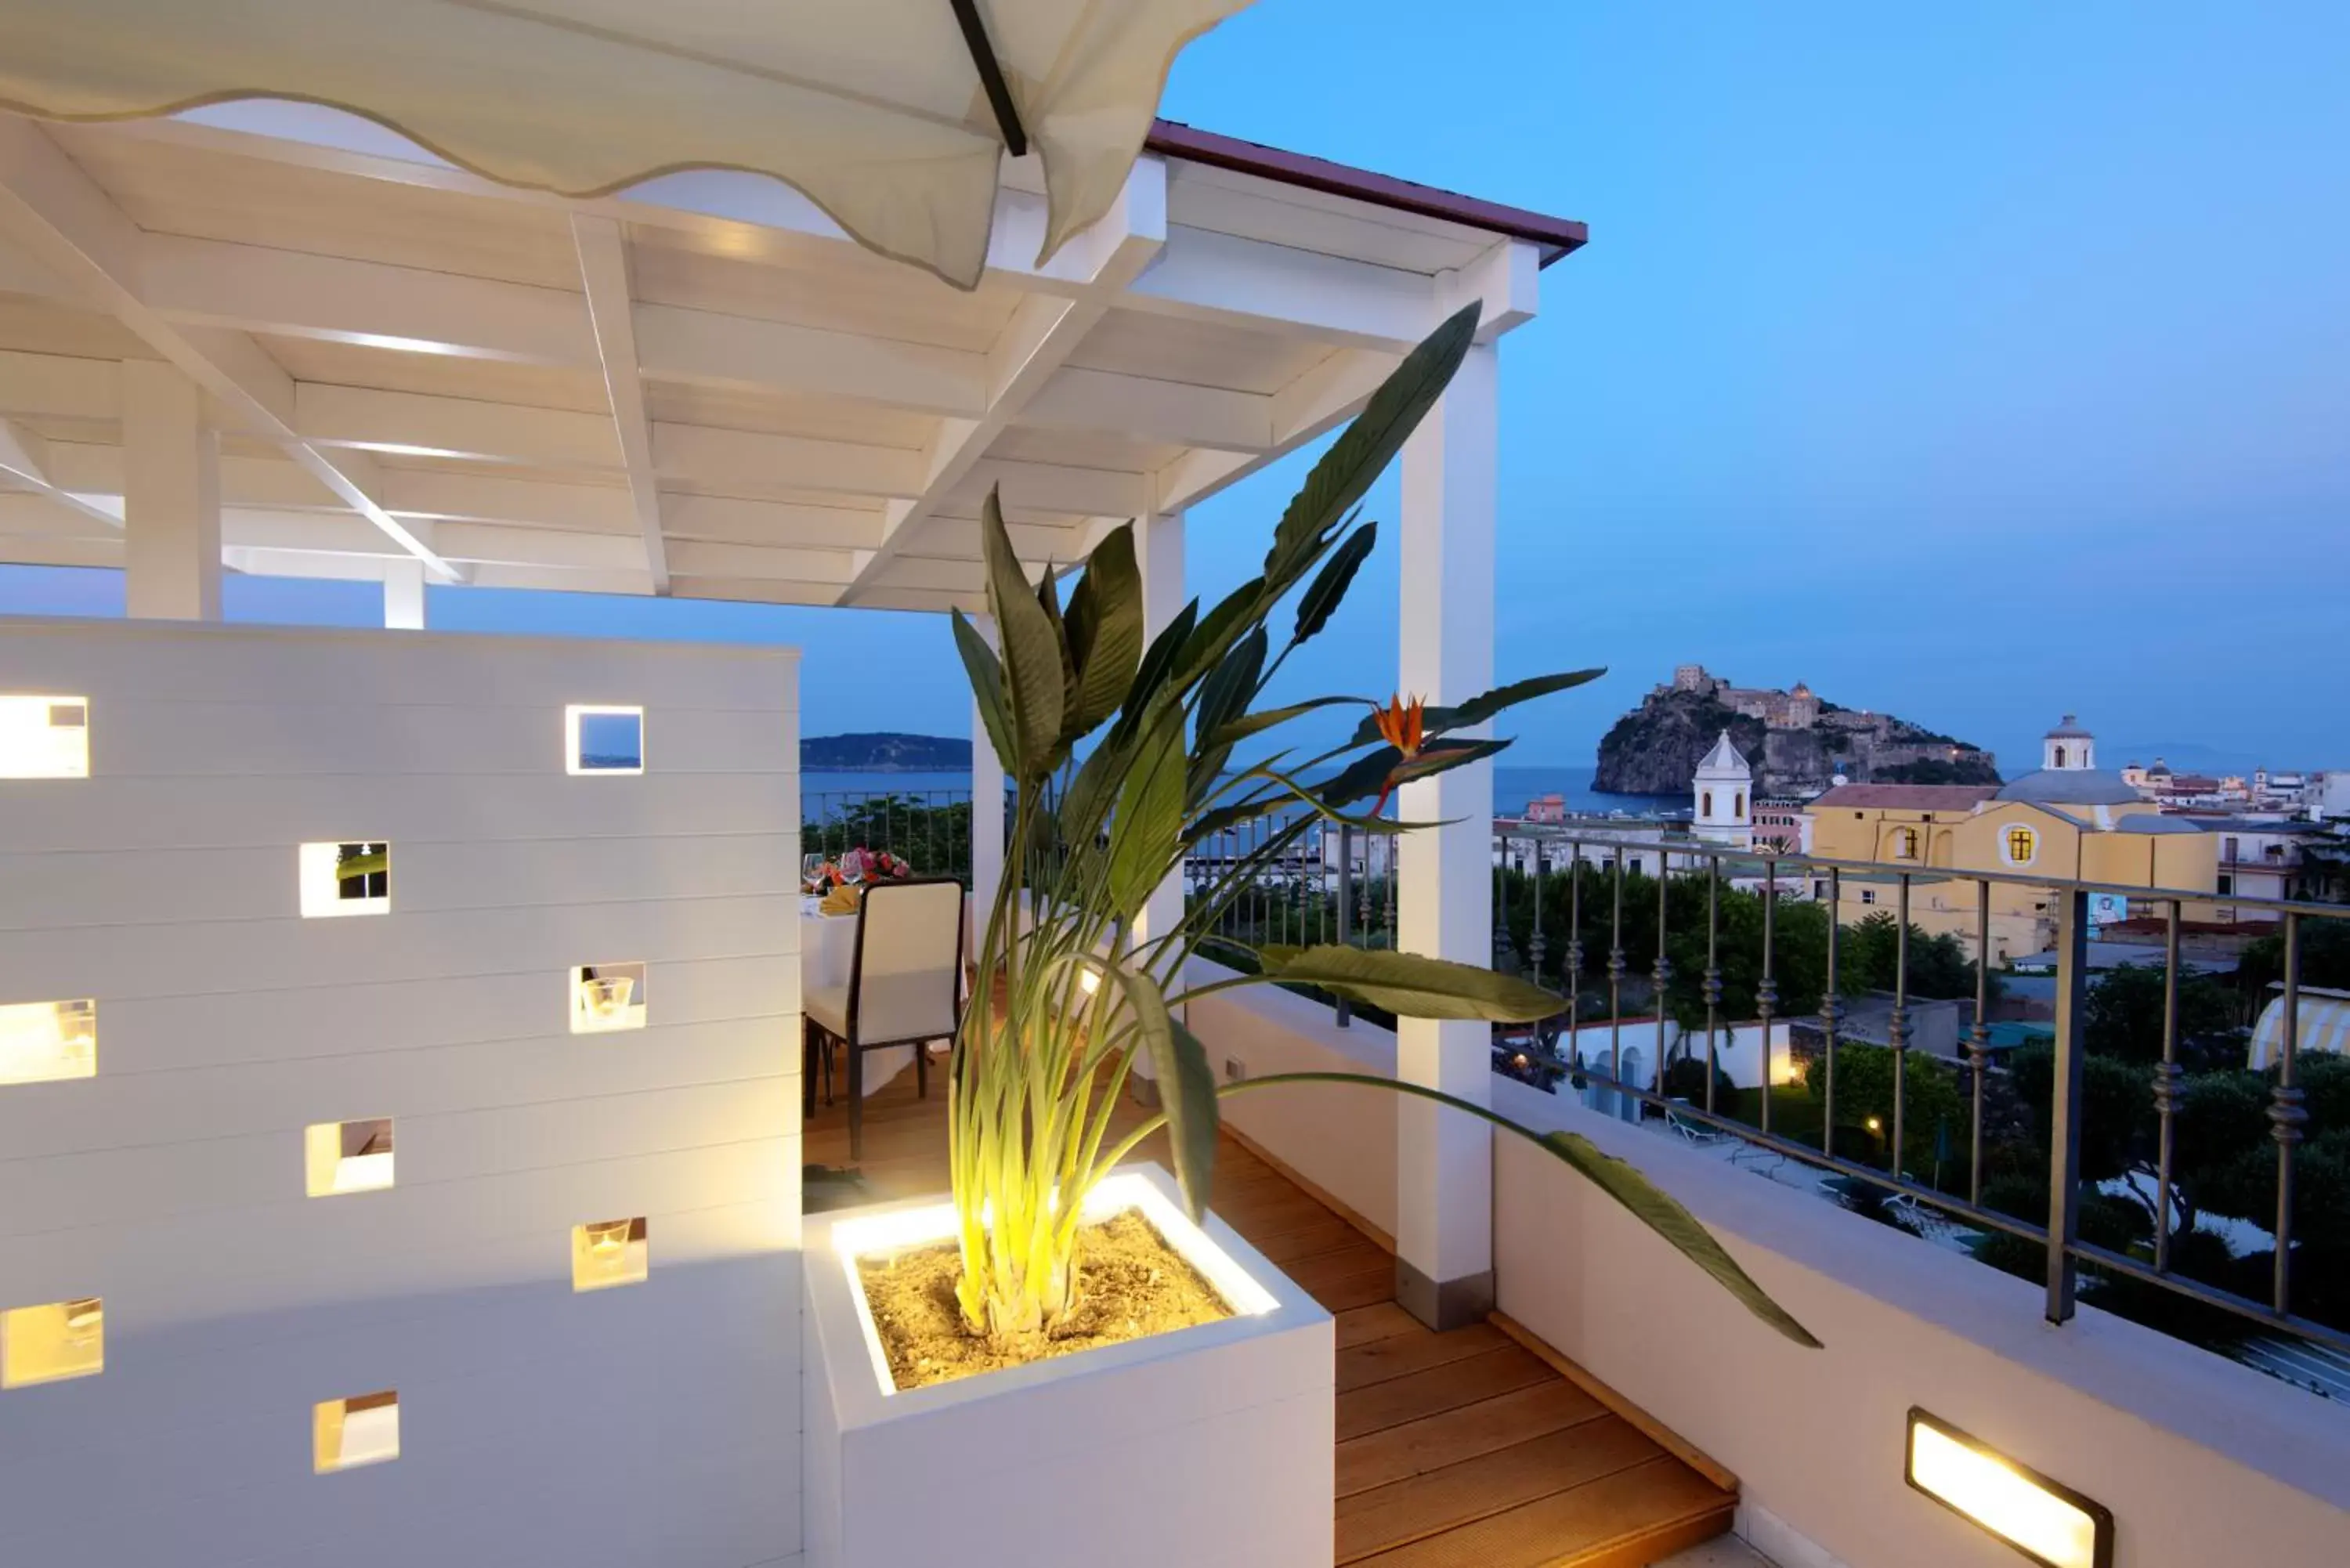 Area and facilities, Balcony/Terrace in Hotel Villa Durrueli Resort & Spa